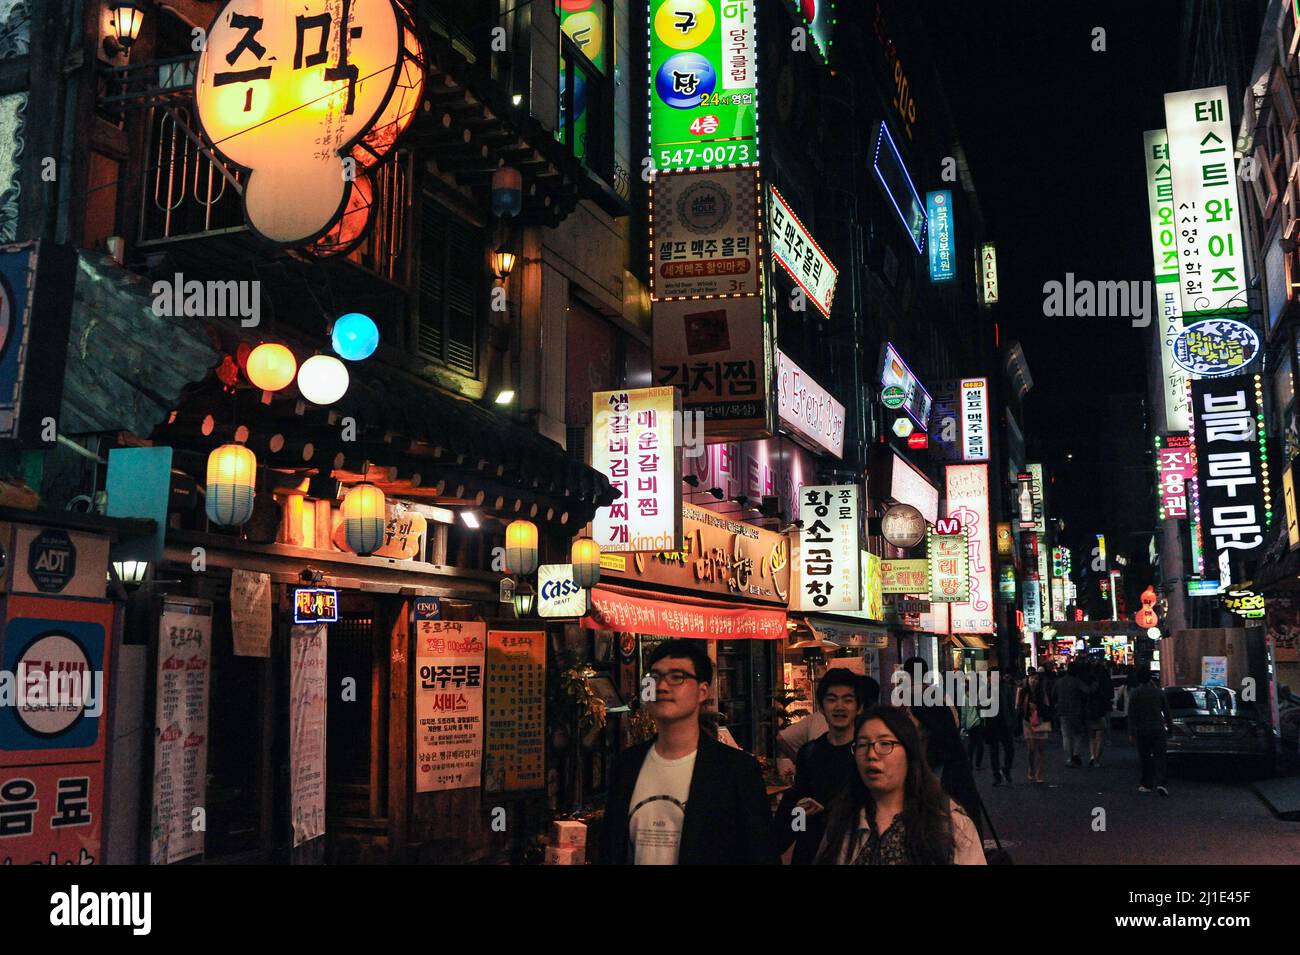 28.04.2013, Corée du Sud, , Séoul - les gens se baladent dans la soirée à travers des rues et des ruelles éclairées au néon dans le quartier animé de divertissement Insadong W Banque D'Images